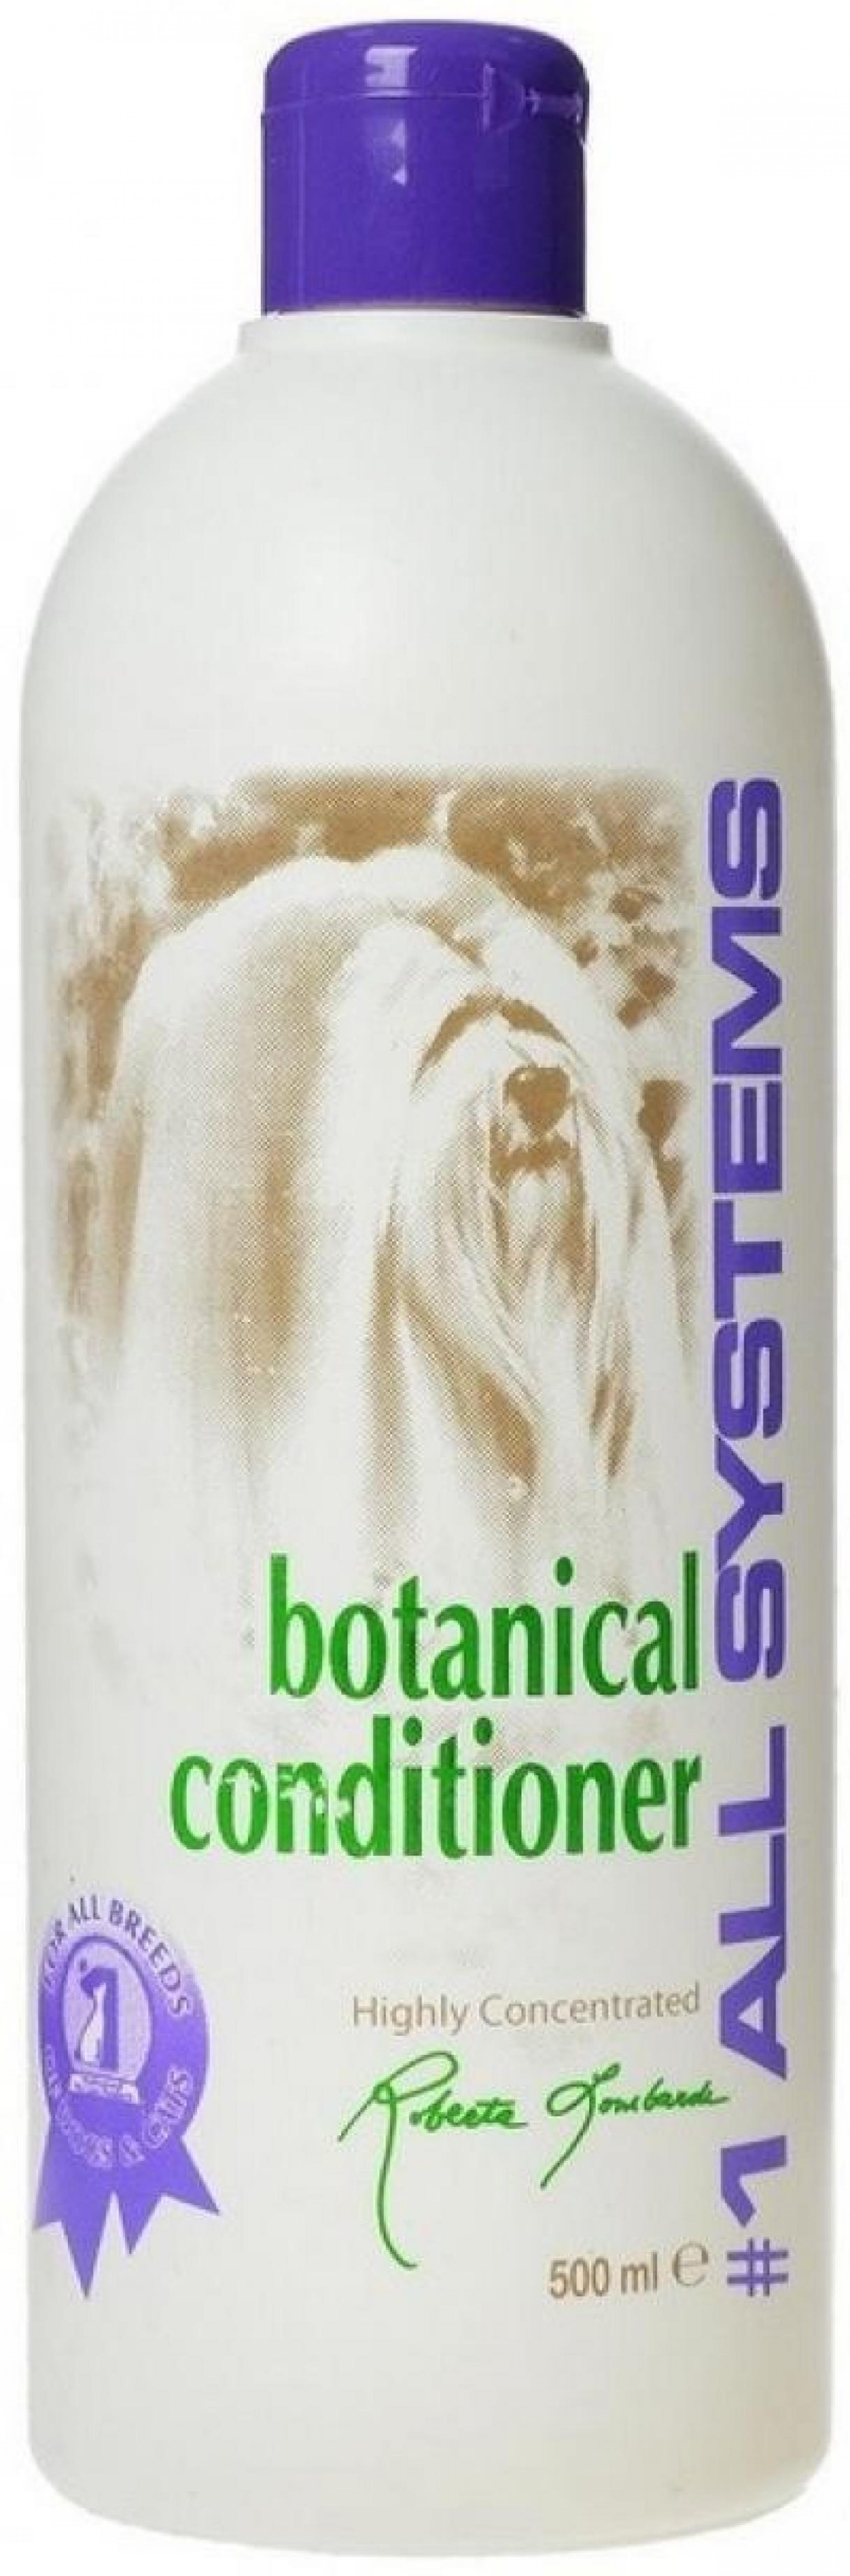 1 All Systems Botanical conditioner кондиционер на основе растительных экстрактов 500 мл